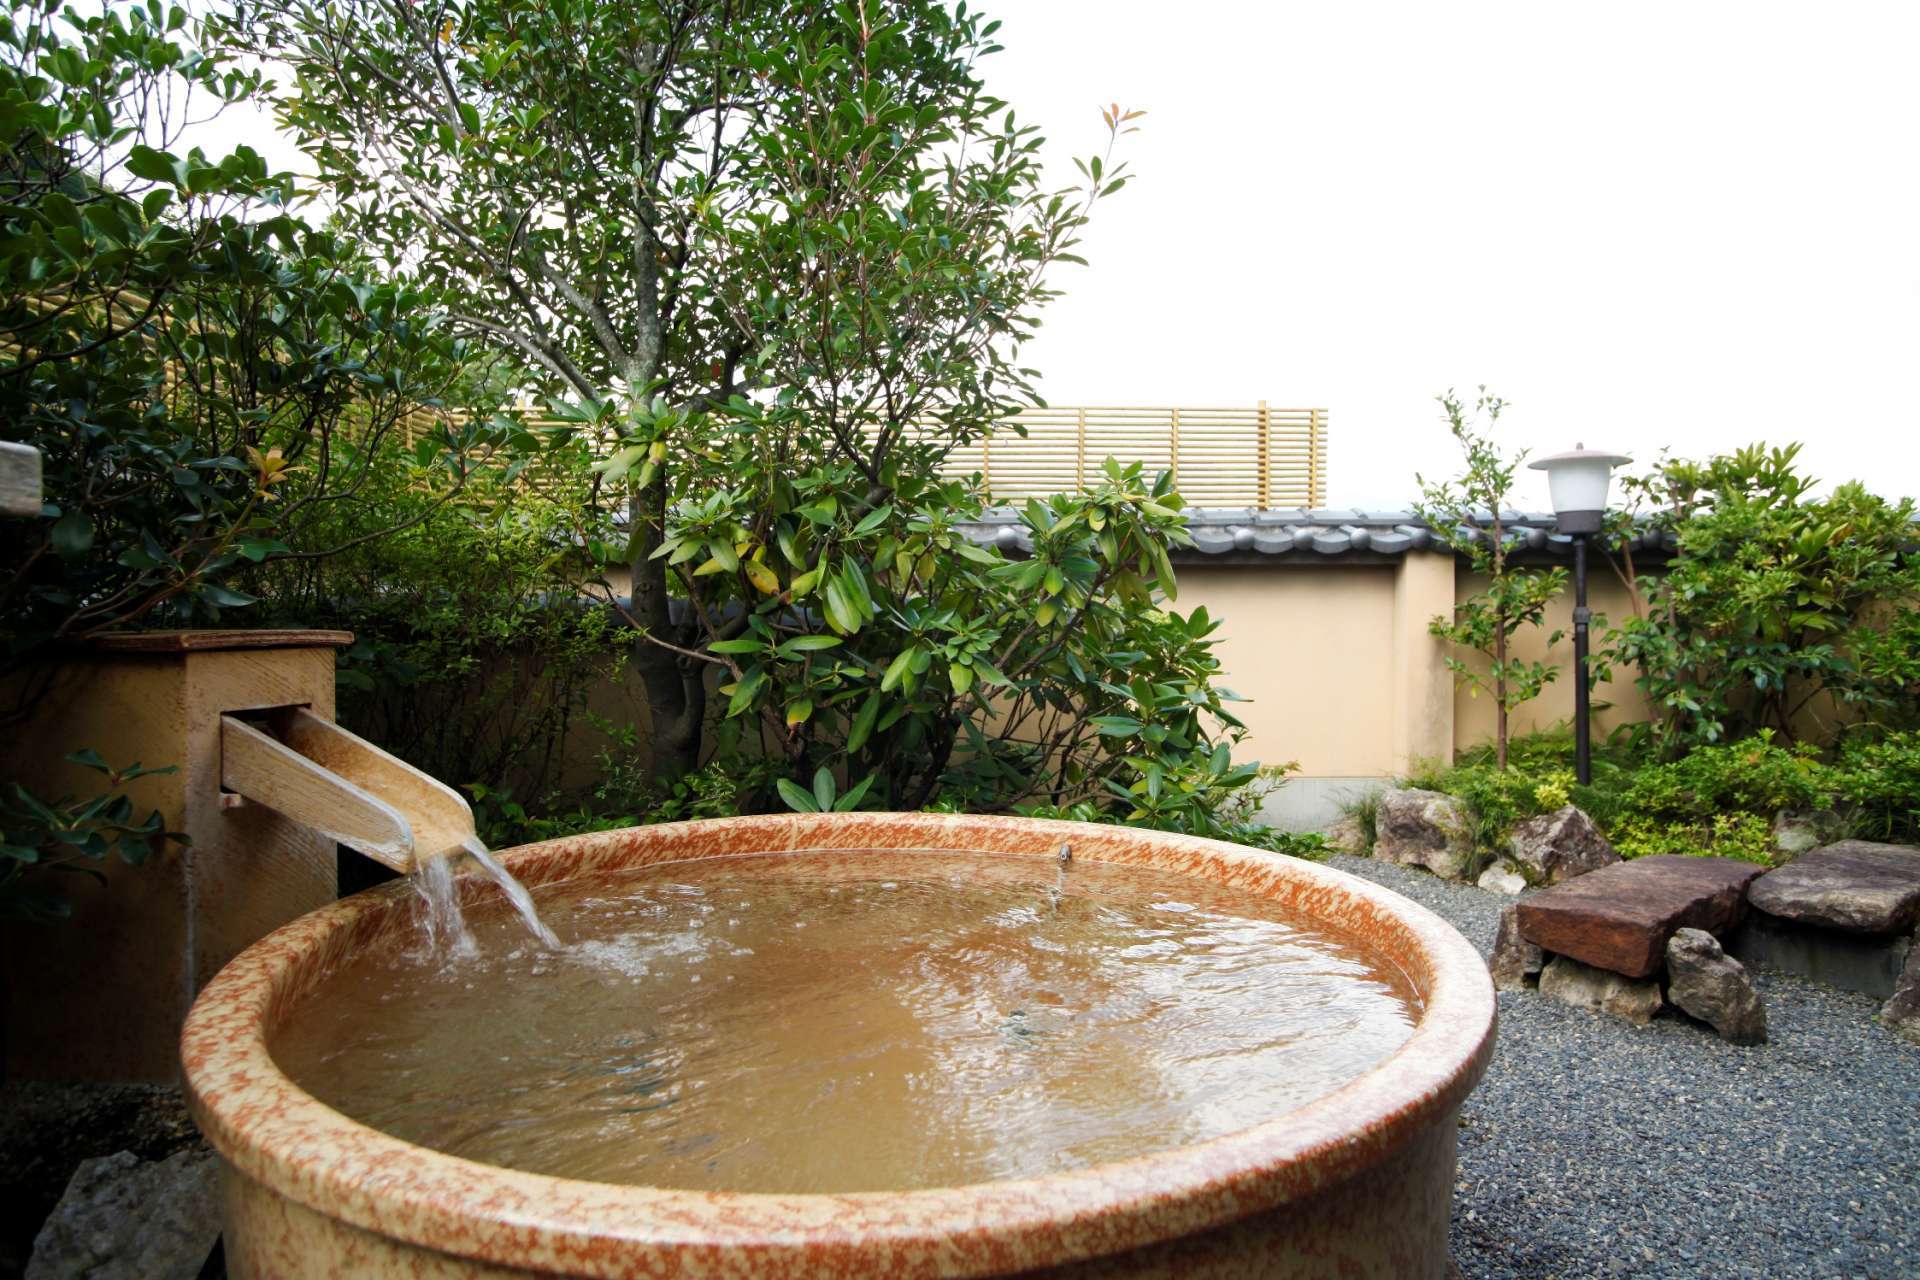 「碧川閣」には信楽焼の露天風呂付き客室も。絶景と温泉を独り占めできます。